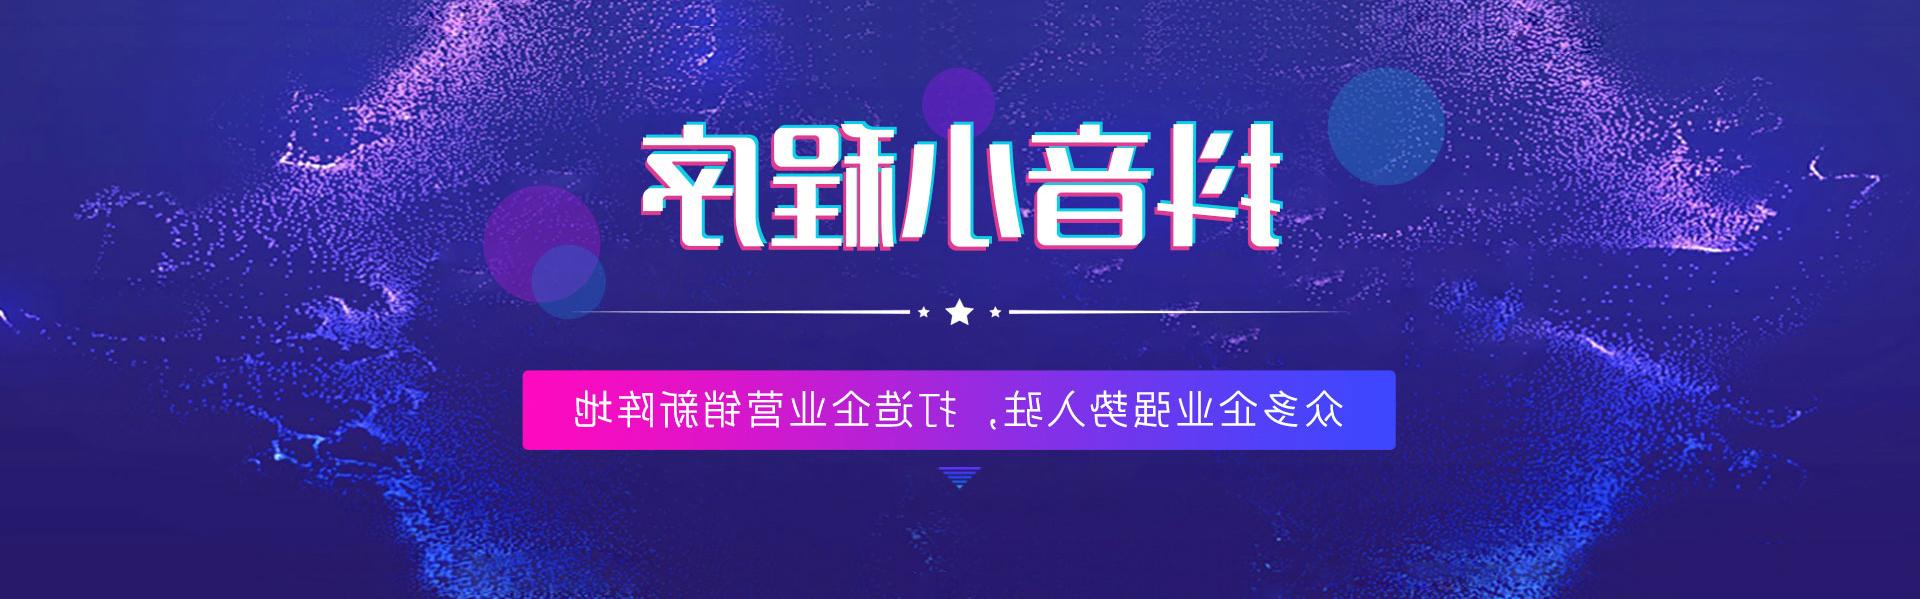 济宁抖音世界杯足彩app,打造企业营销新阵地